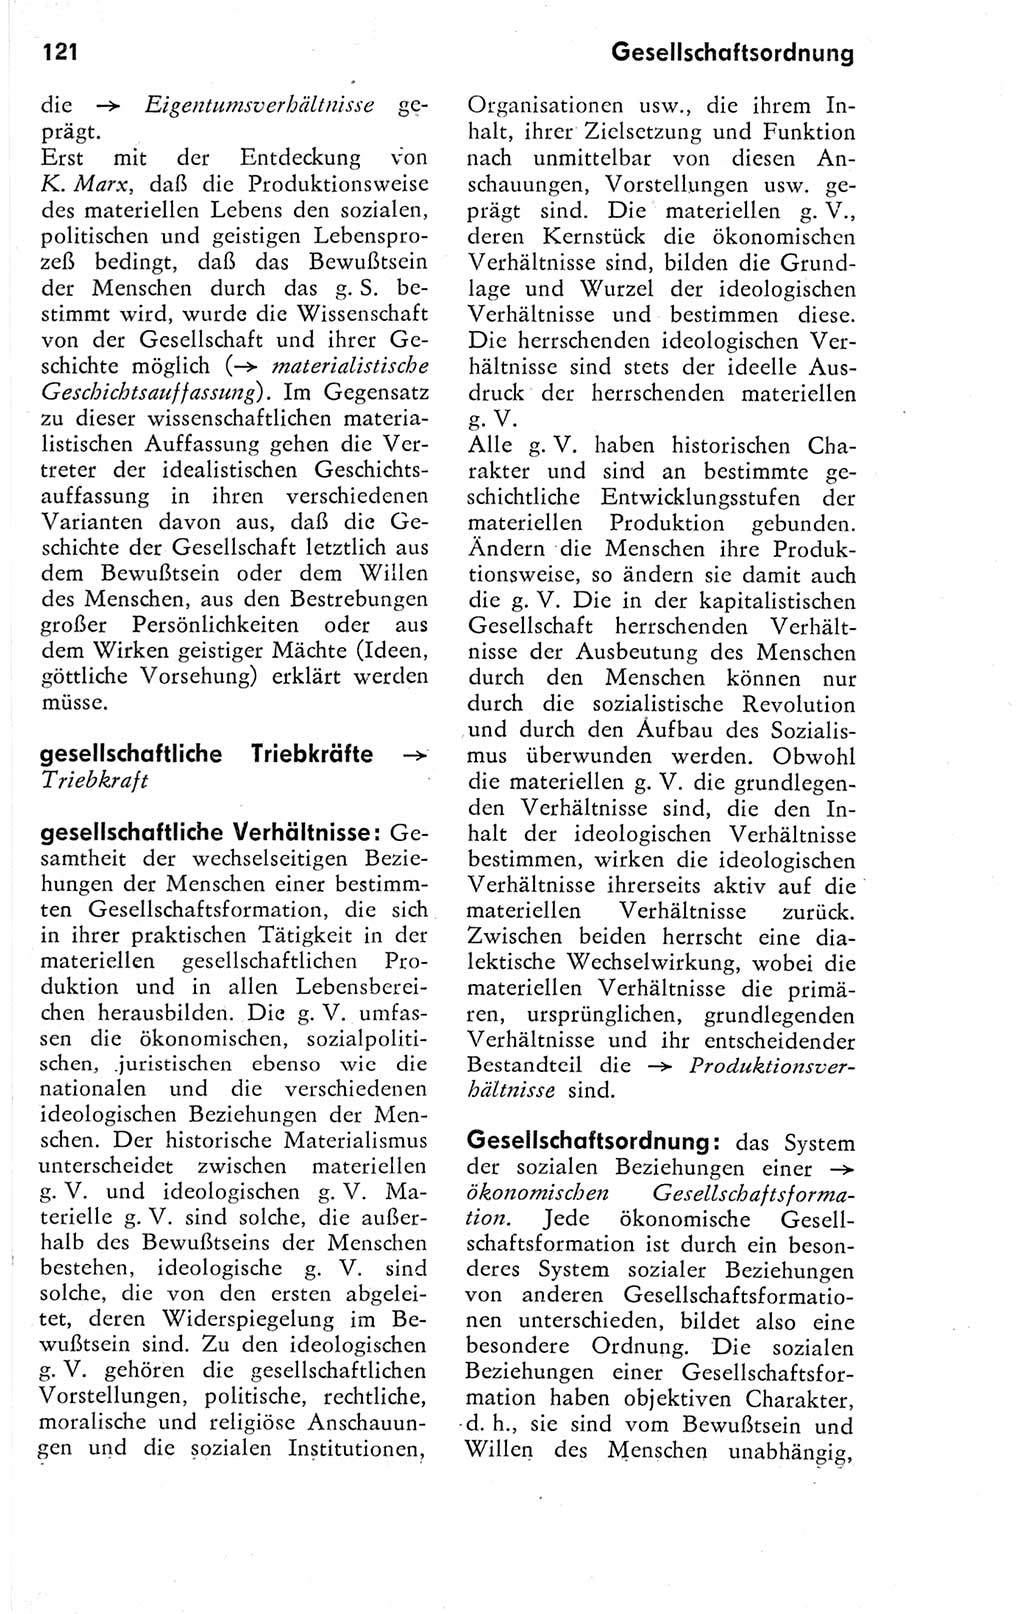 Kleines Wörterbuch der marxistisch-leninistischen Philosophie [Deutsche Demokratische Republik (DDR)] 1974, Seite 121 (Kl. Wb. ML Phil. DDR 1974, S. 121)